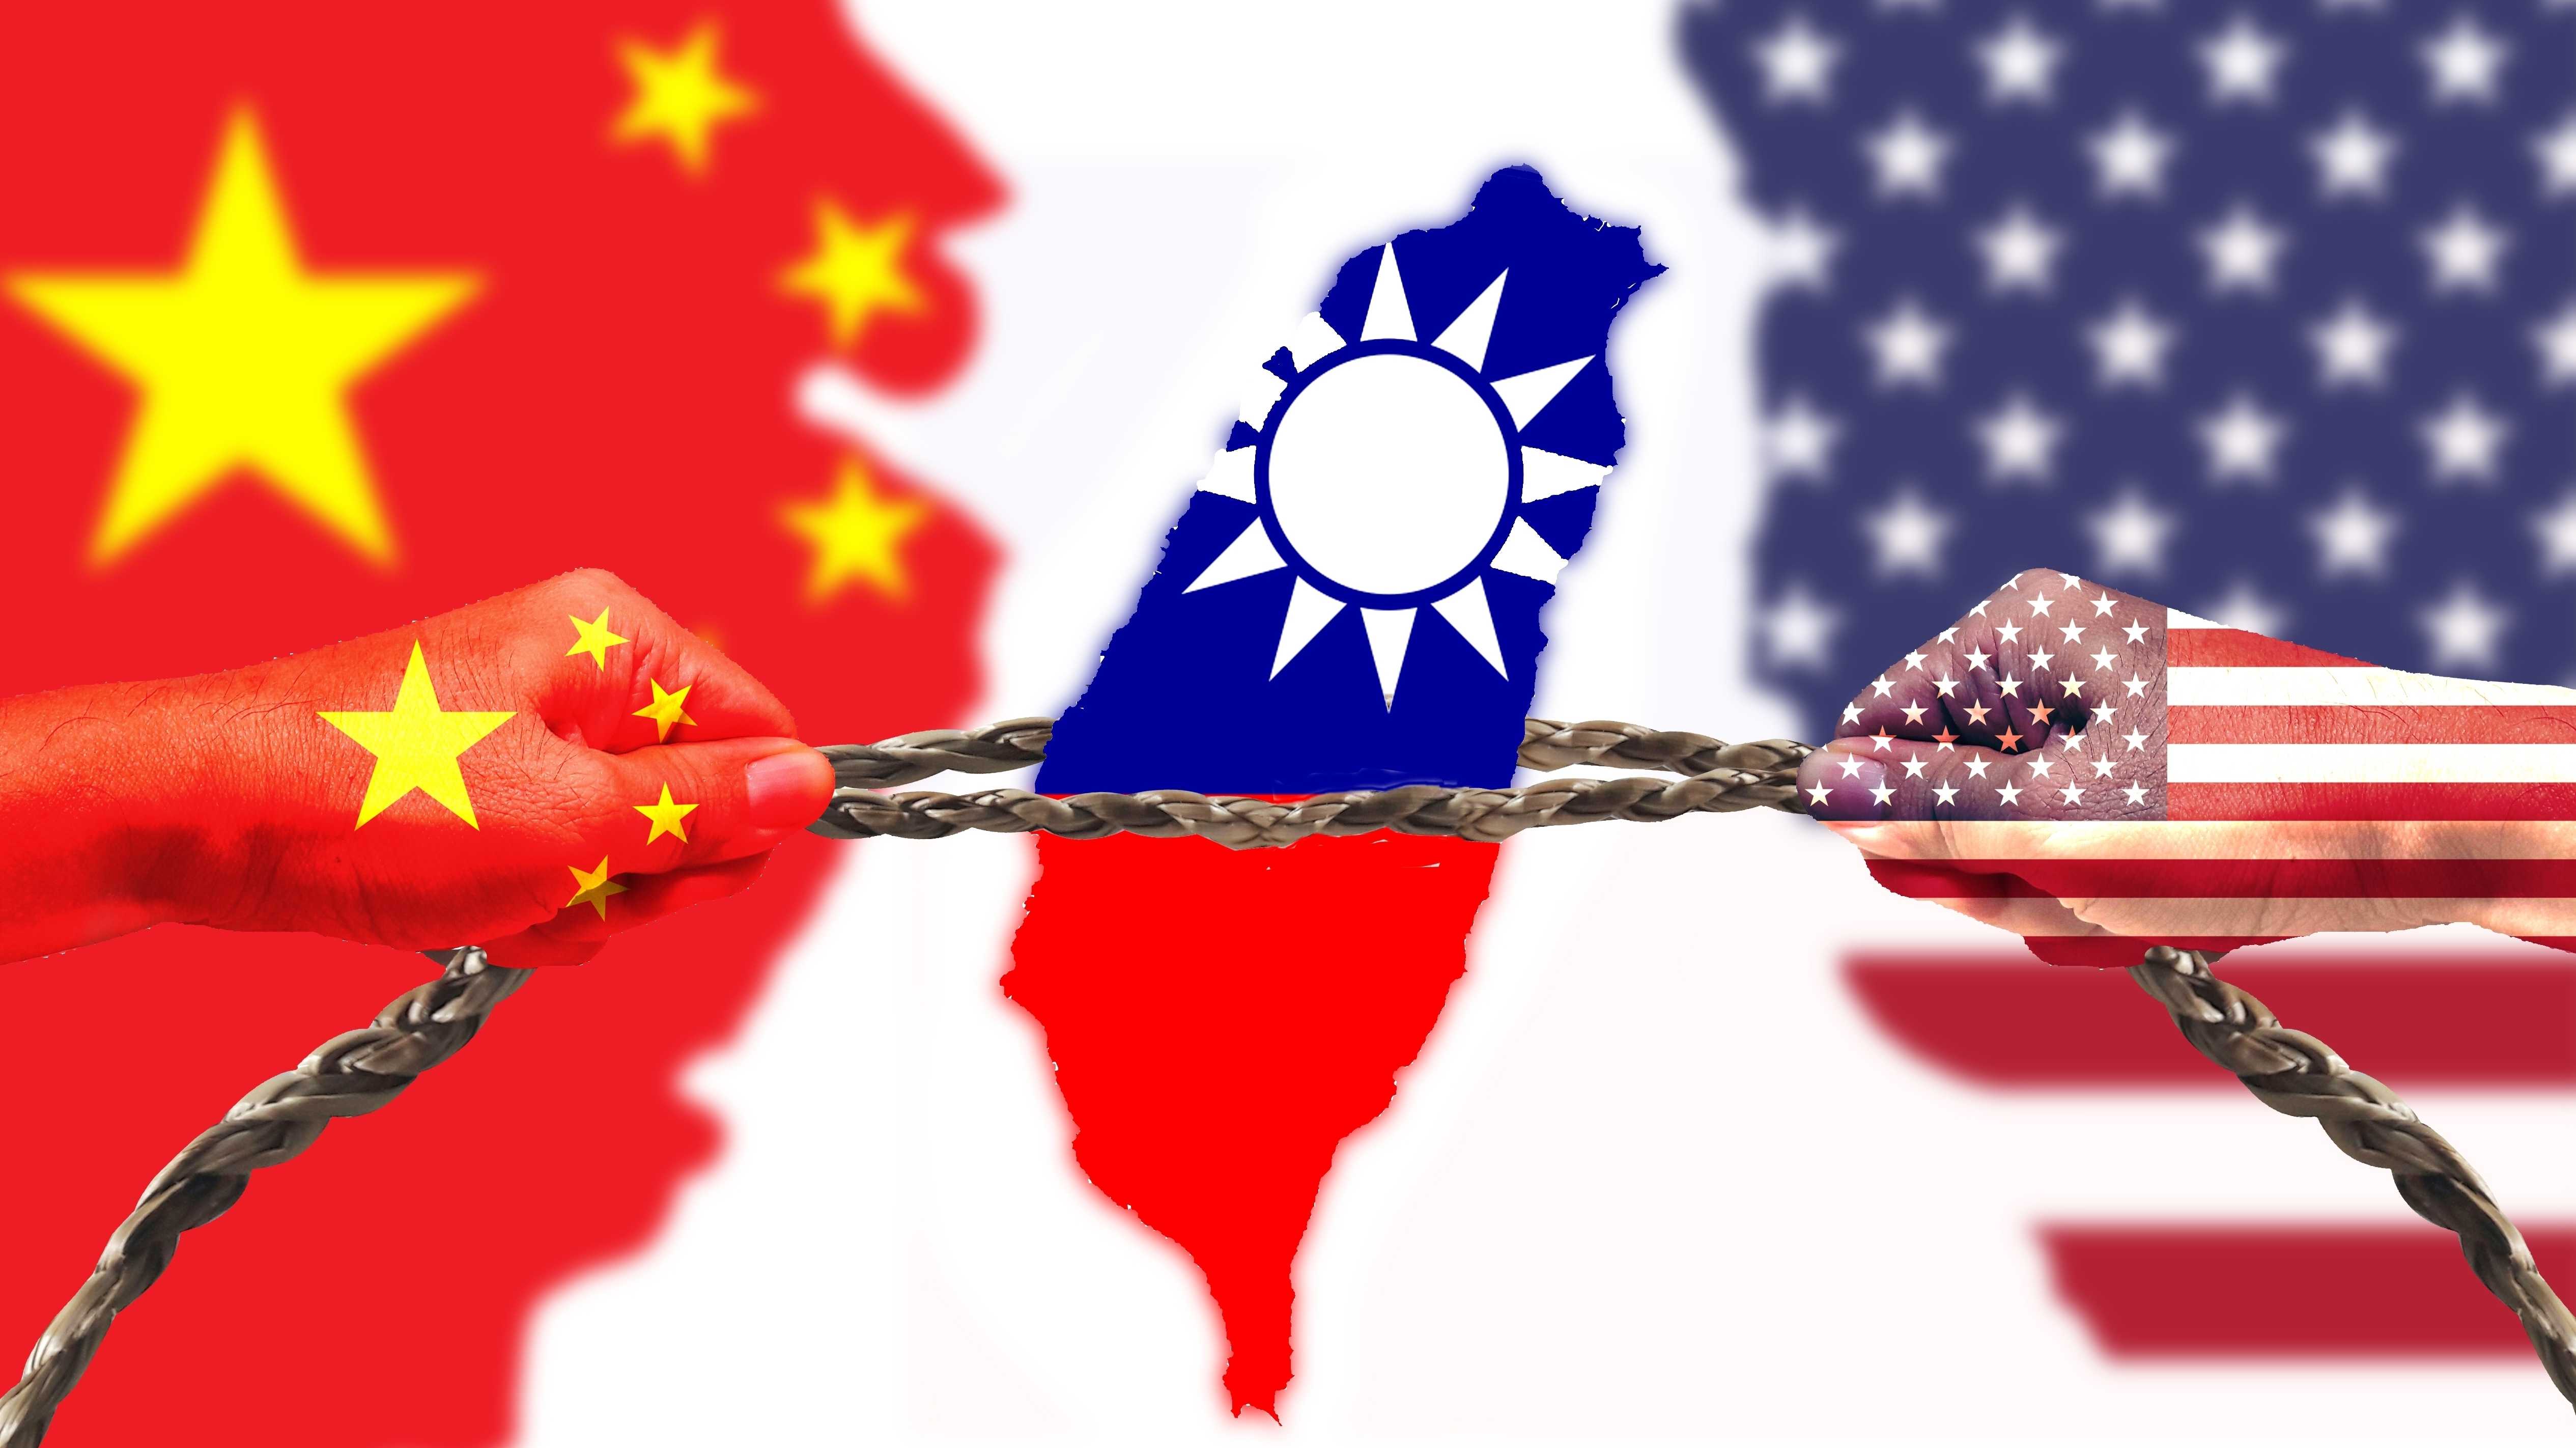 Symbolische Darstellung des geopolitischen Tauziehens um Taiwan